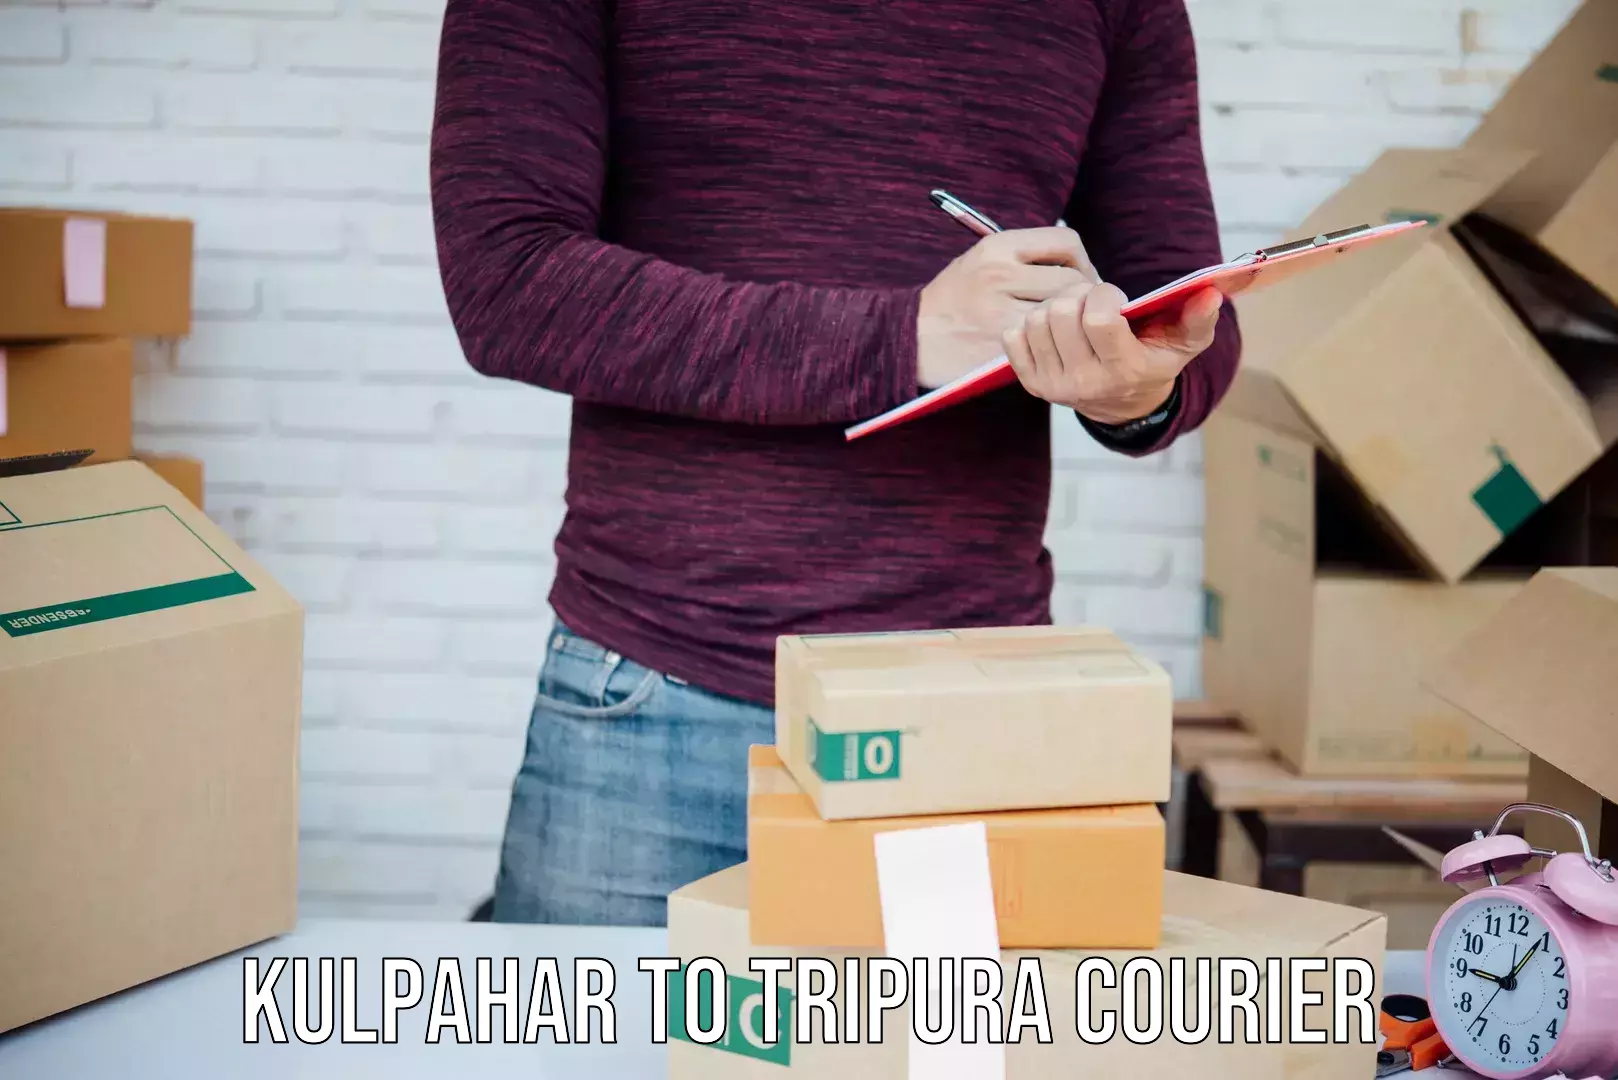 Multi-service courier options Kulpahar to IIIT Agartala